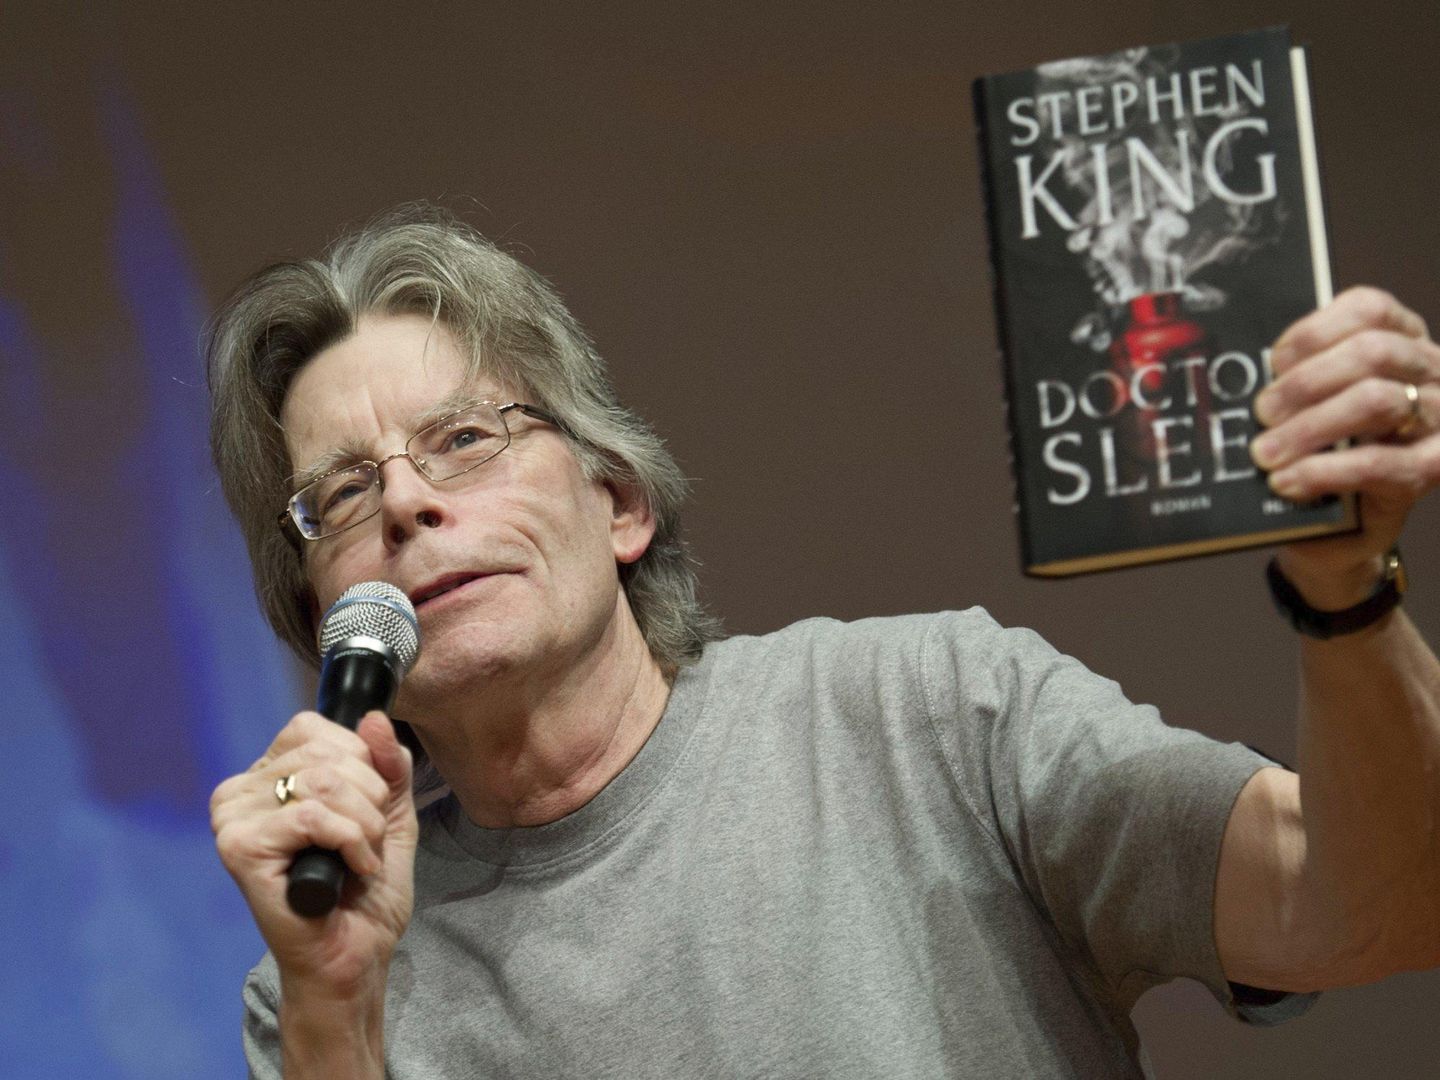 El escritor Stephen King presentando uno de sus libros